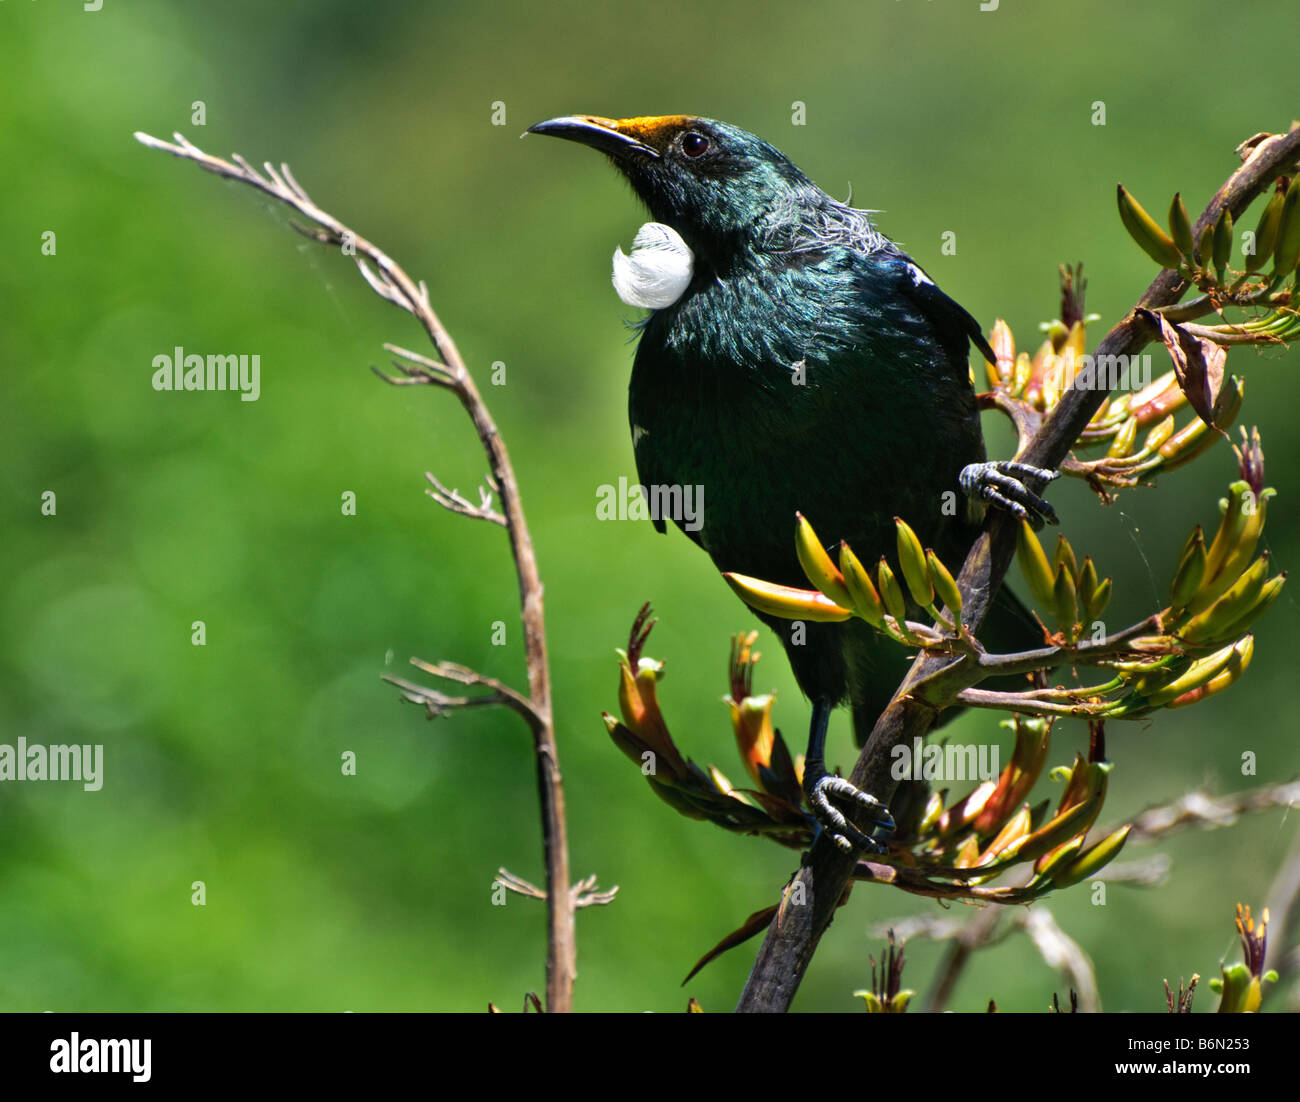 Tui (Parson, oiseau Prosthemadera novaeseelandiae - originaire de la Nouvelle-Zélande) d'oiseaux se nourrissant de graines de lin Banque D'Images